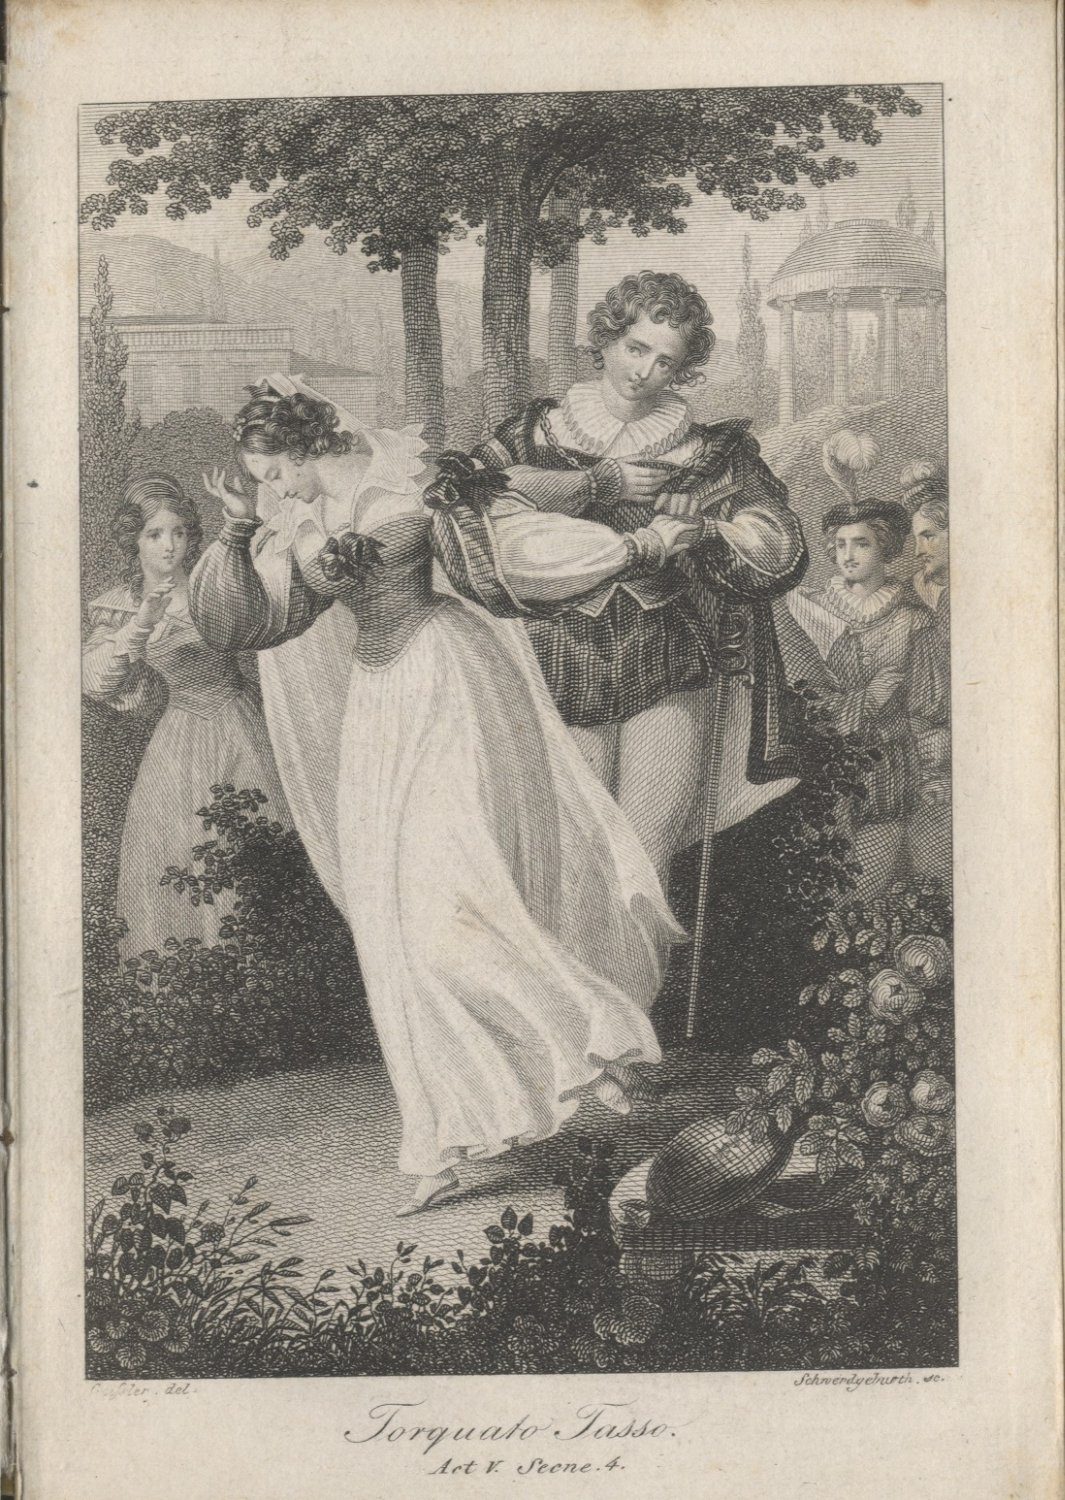  - Torquato Tasso, Act V, Scene 4Tasso und die Prinzessin (Freies Deutsches Hochstift / Frankfurter Goethe-Museum CC BY-NC-SA)